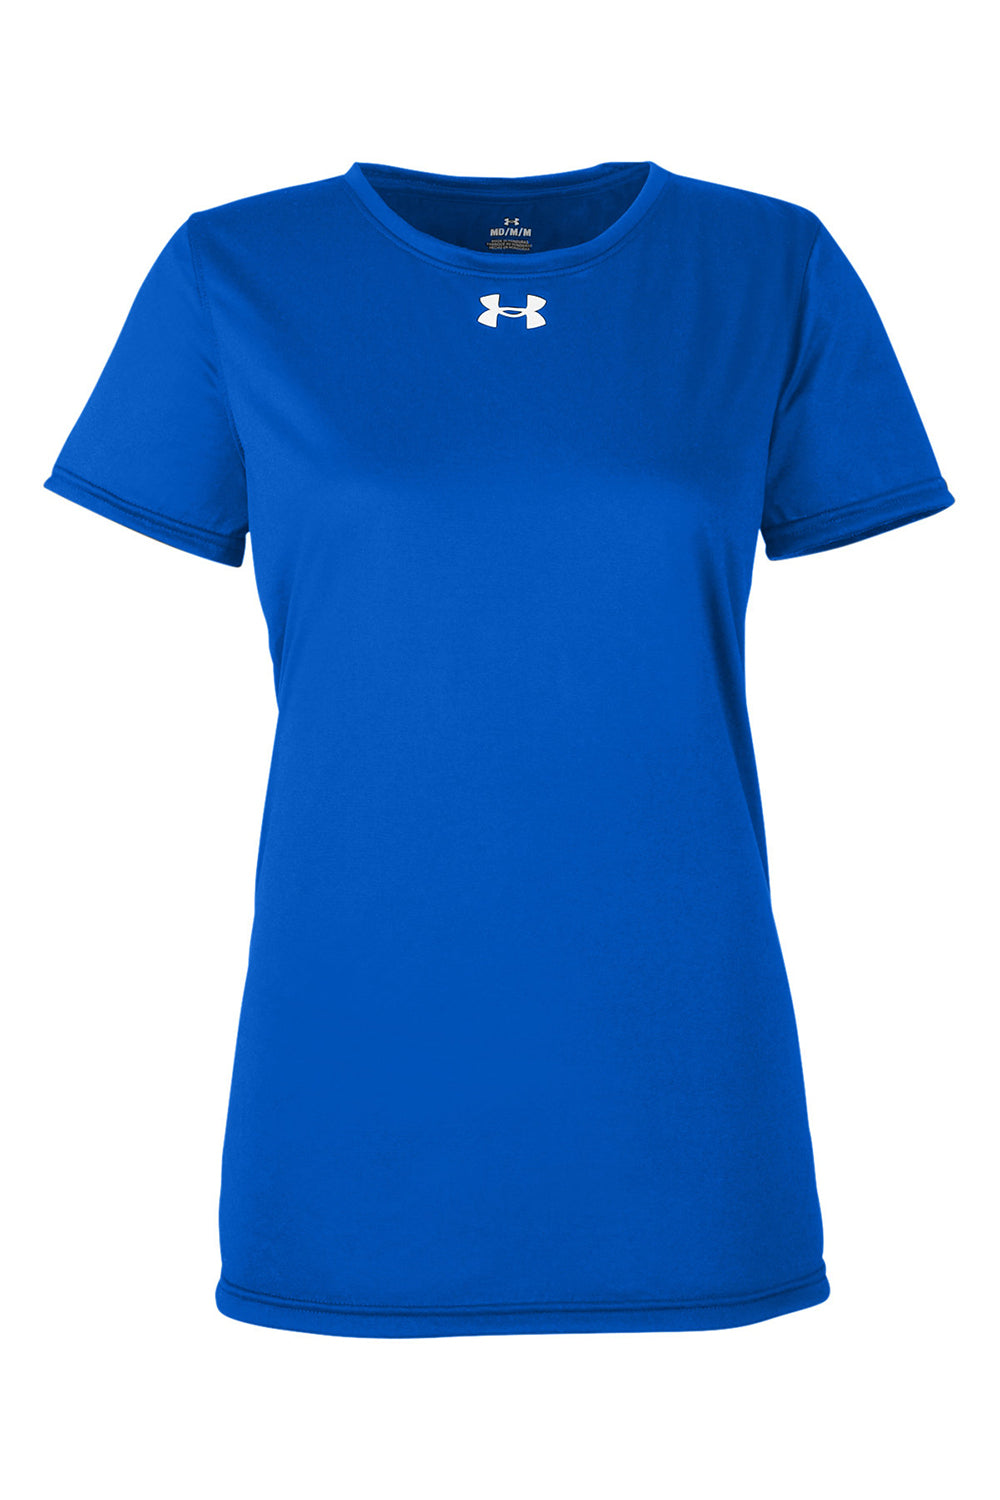 Under Armour 1376847 Womens Team Tech Moisture Wicking Short Sleeve Crewneck T-Shirt Royal Blue Flat Front